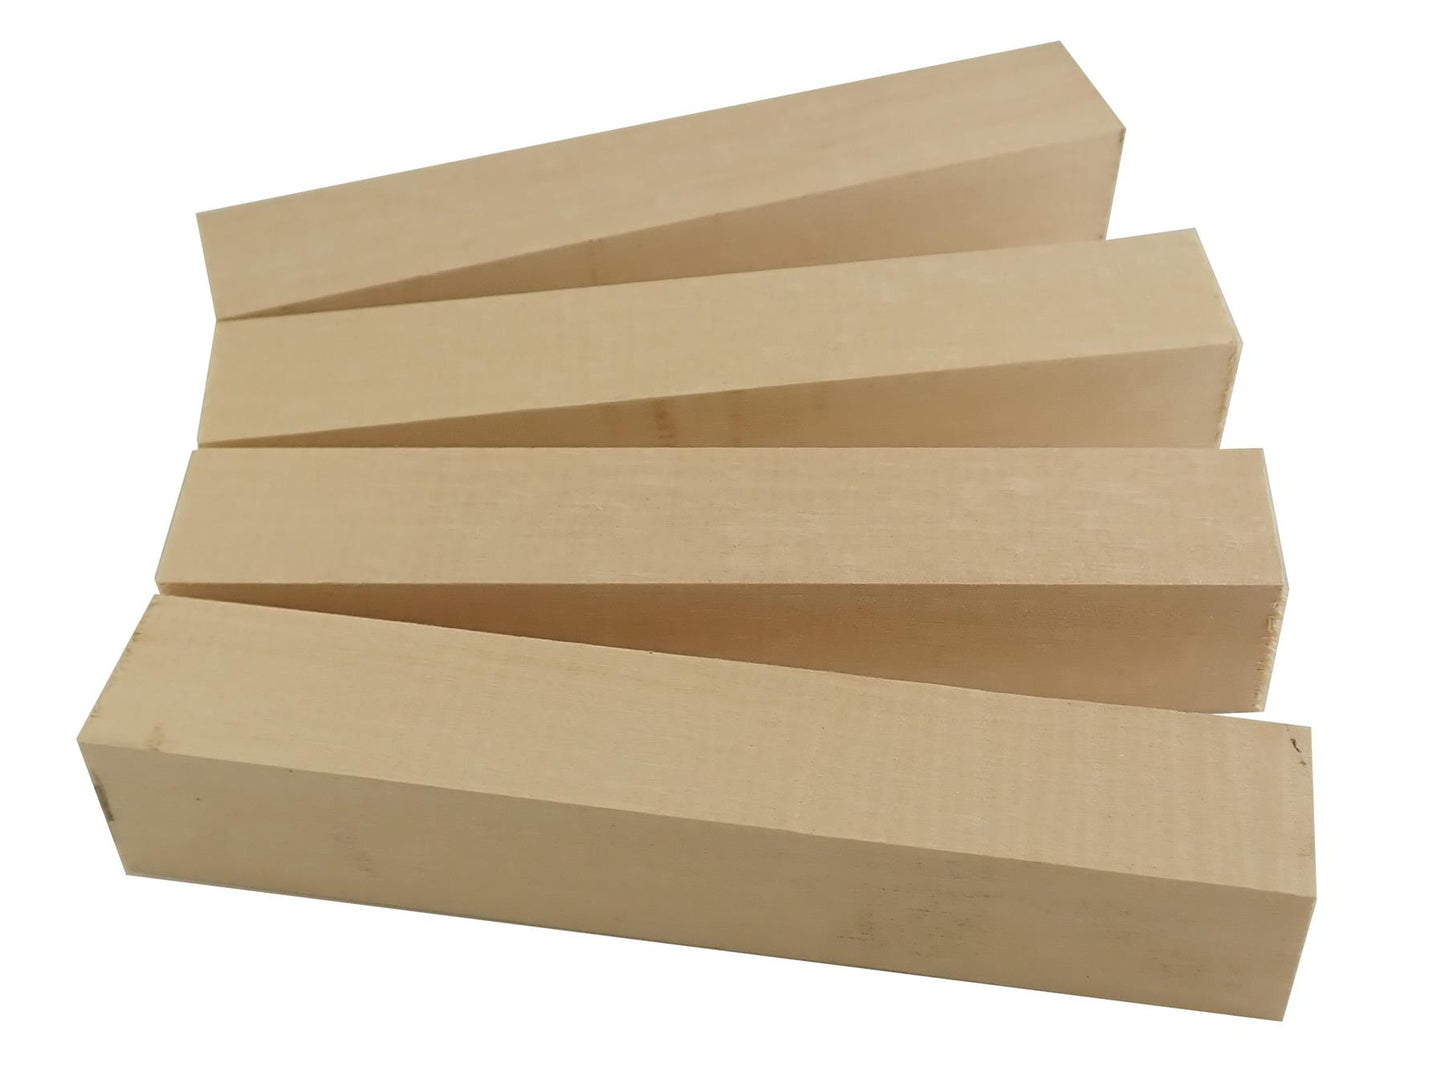 Turners' Mill Basswood Carving Blocks - 150x25x25mm (5.9x0.98x0.98"), Set of 4